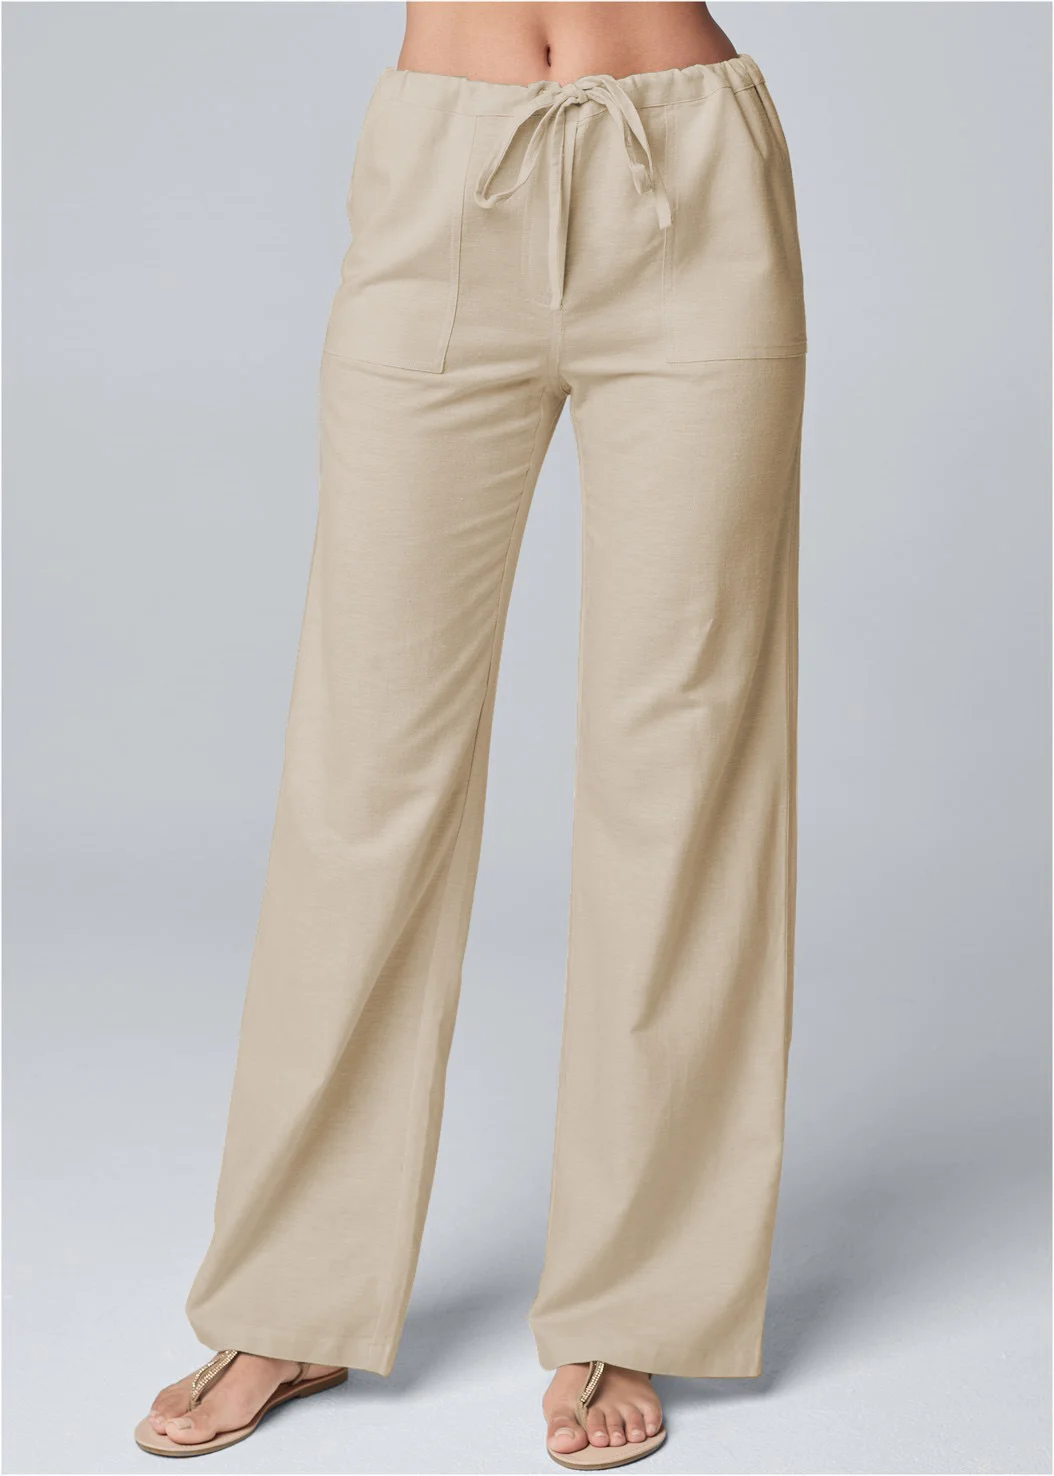 Fashionable & Comfortable Linen Pants for Women Loose Fit Cotton Linen Pants with Belt 